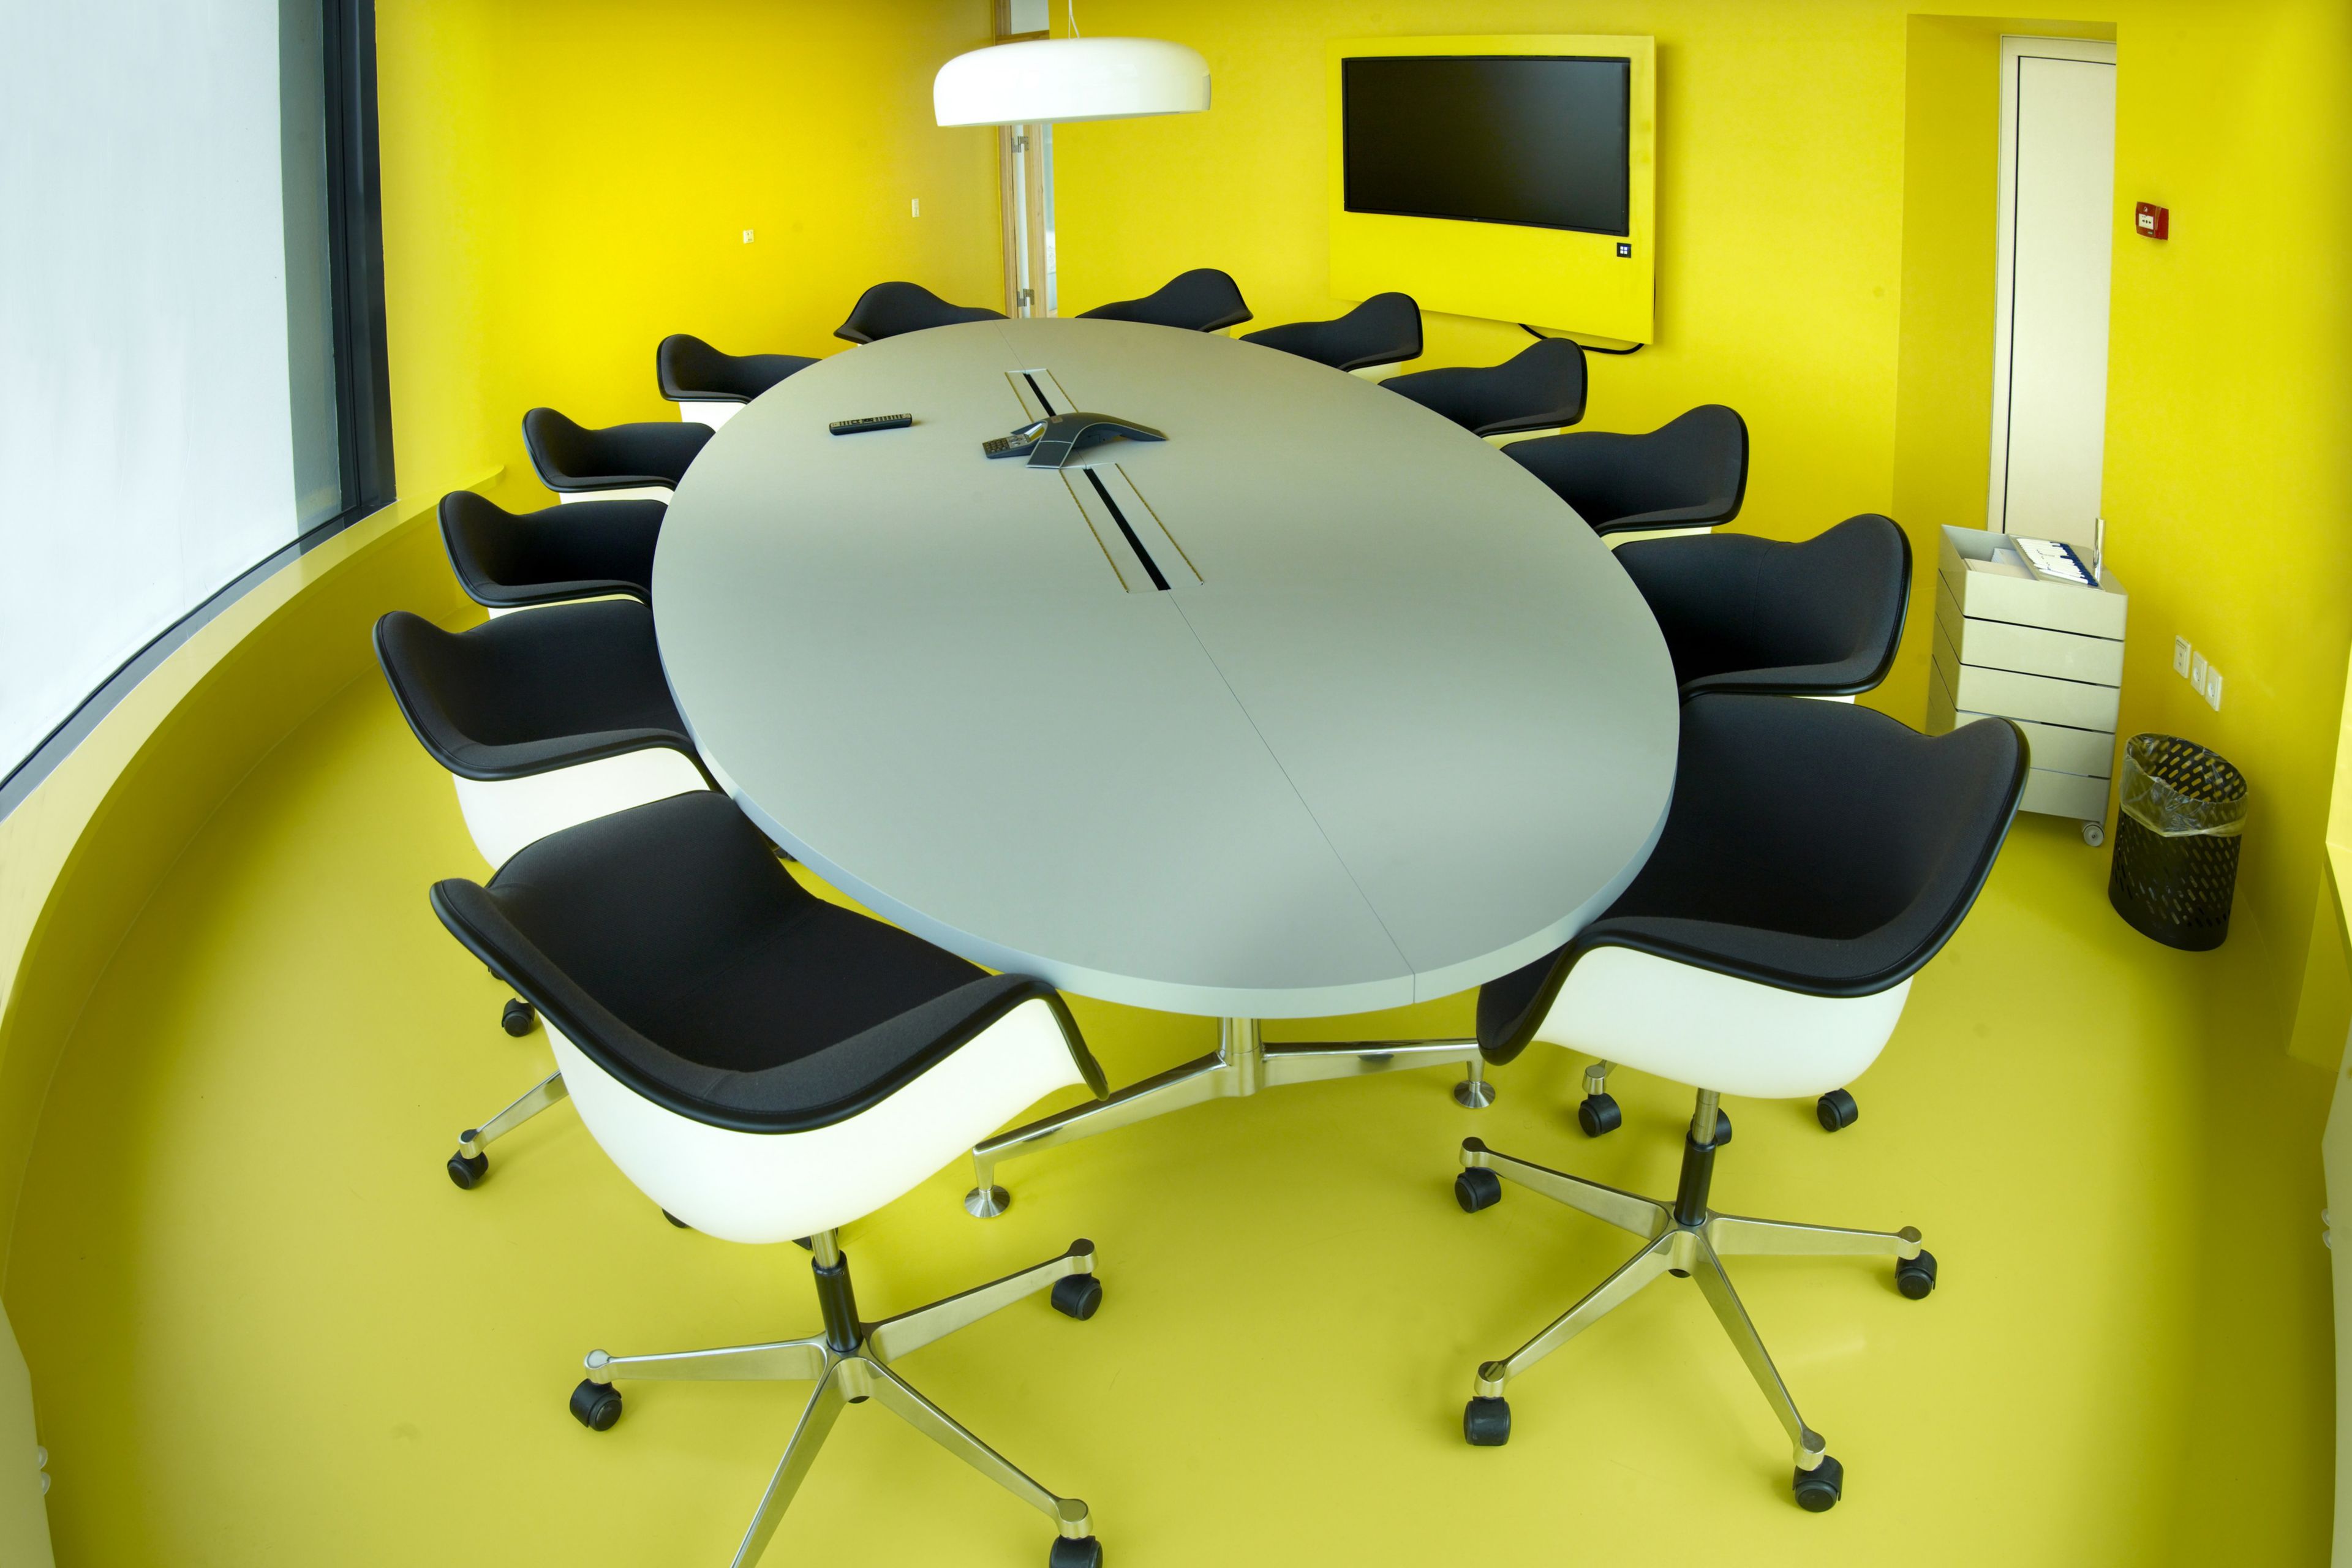 Decorative yellow floor in office meeting room